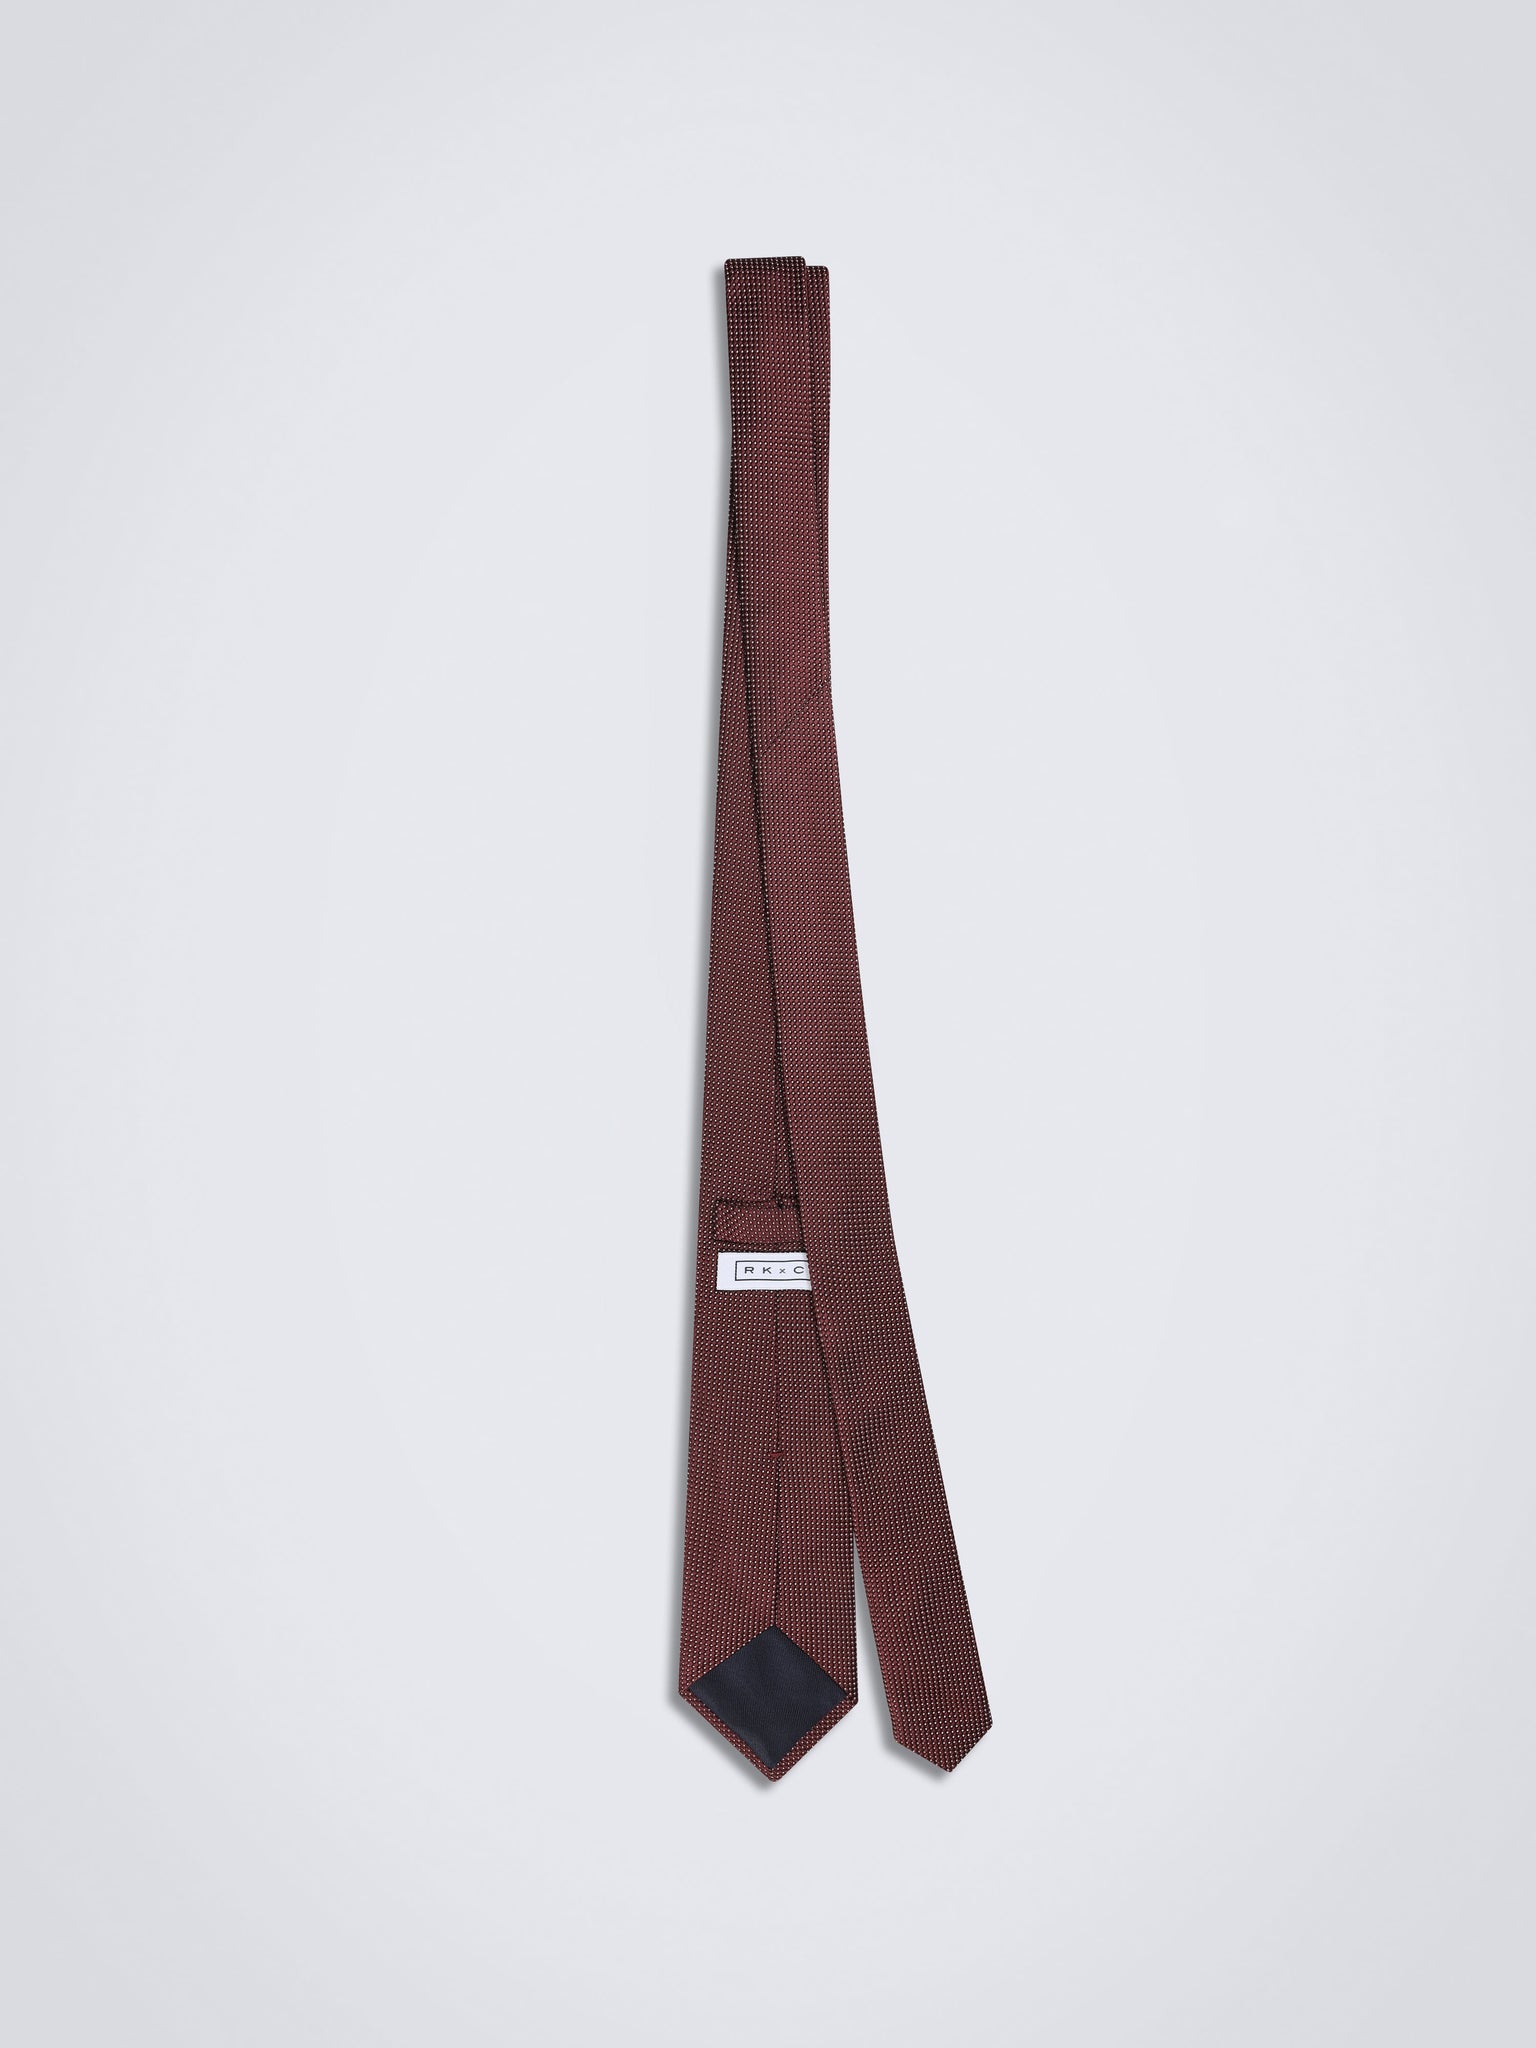 Chokore Pinpoint (Maroon) Necktie